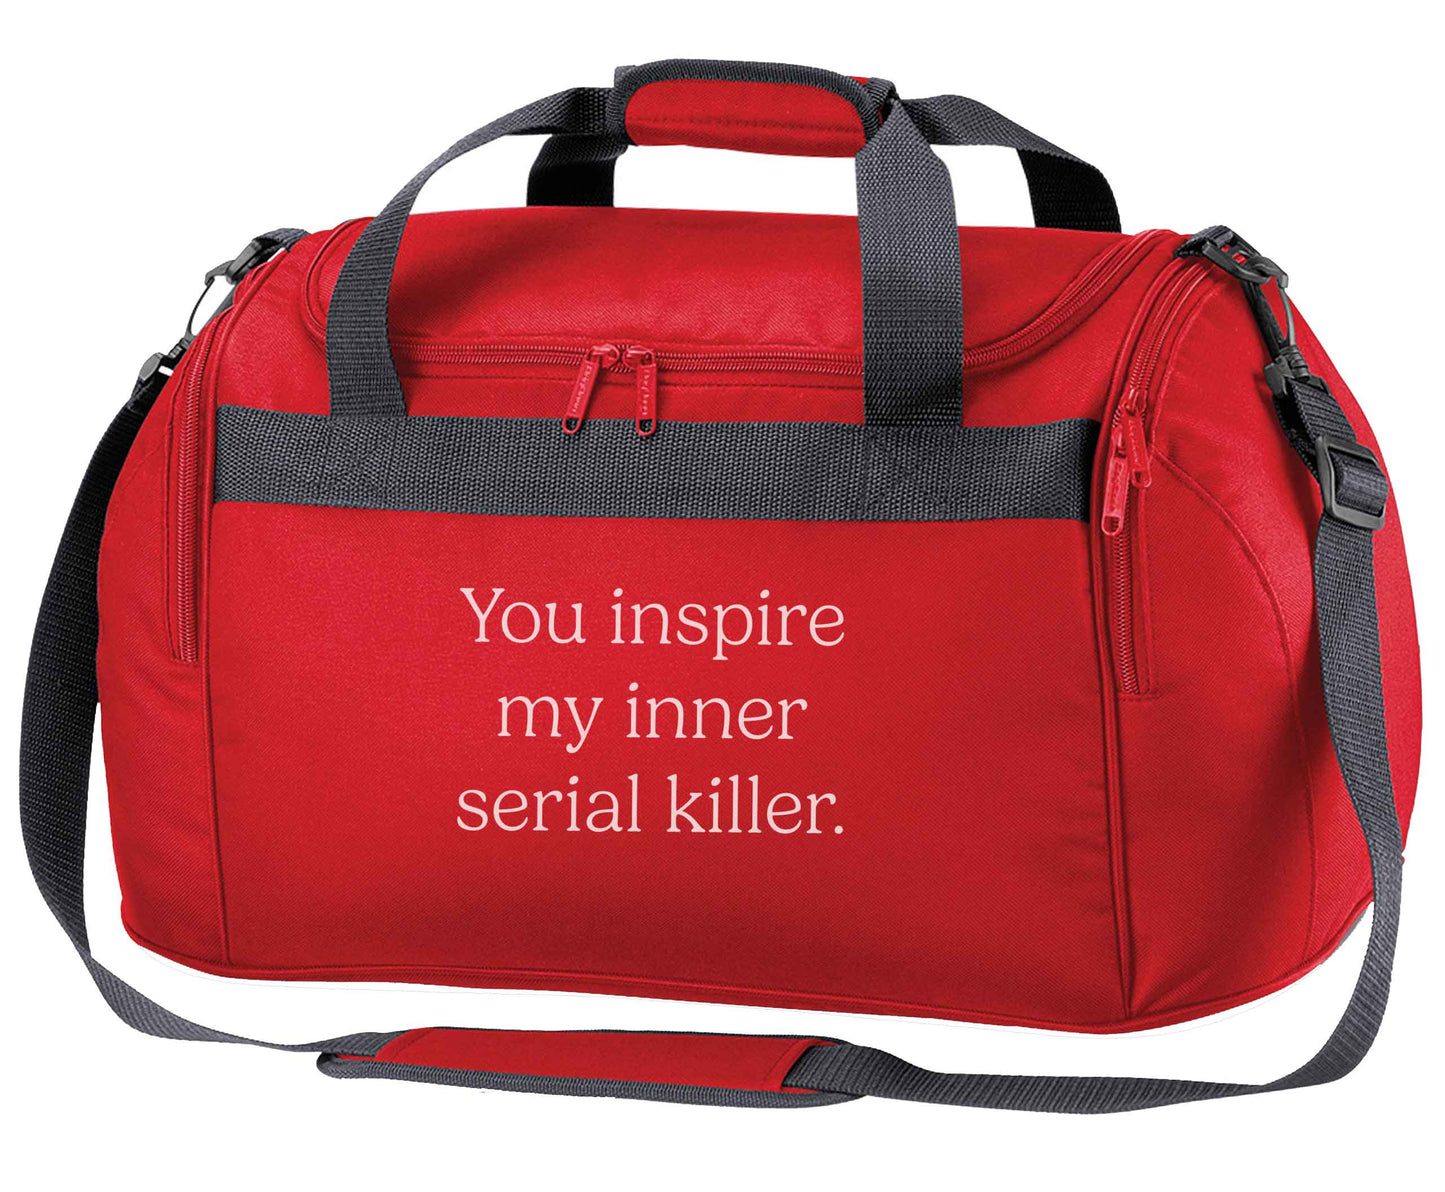 You inspire my inner serial killer Kit red holdall / duffel bag